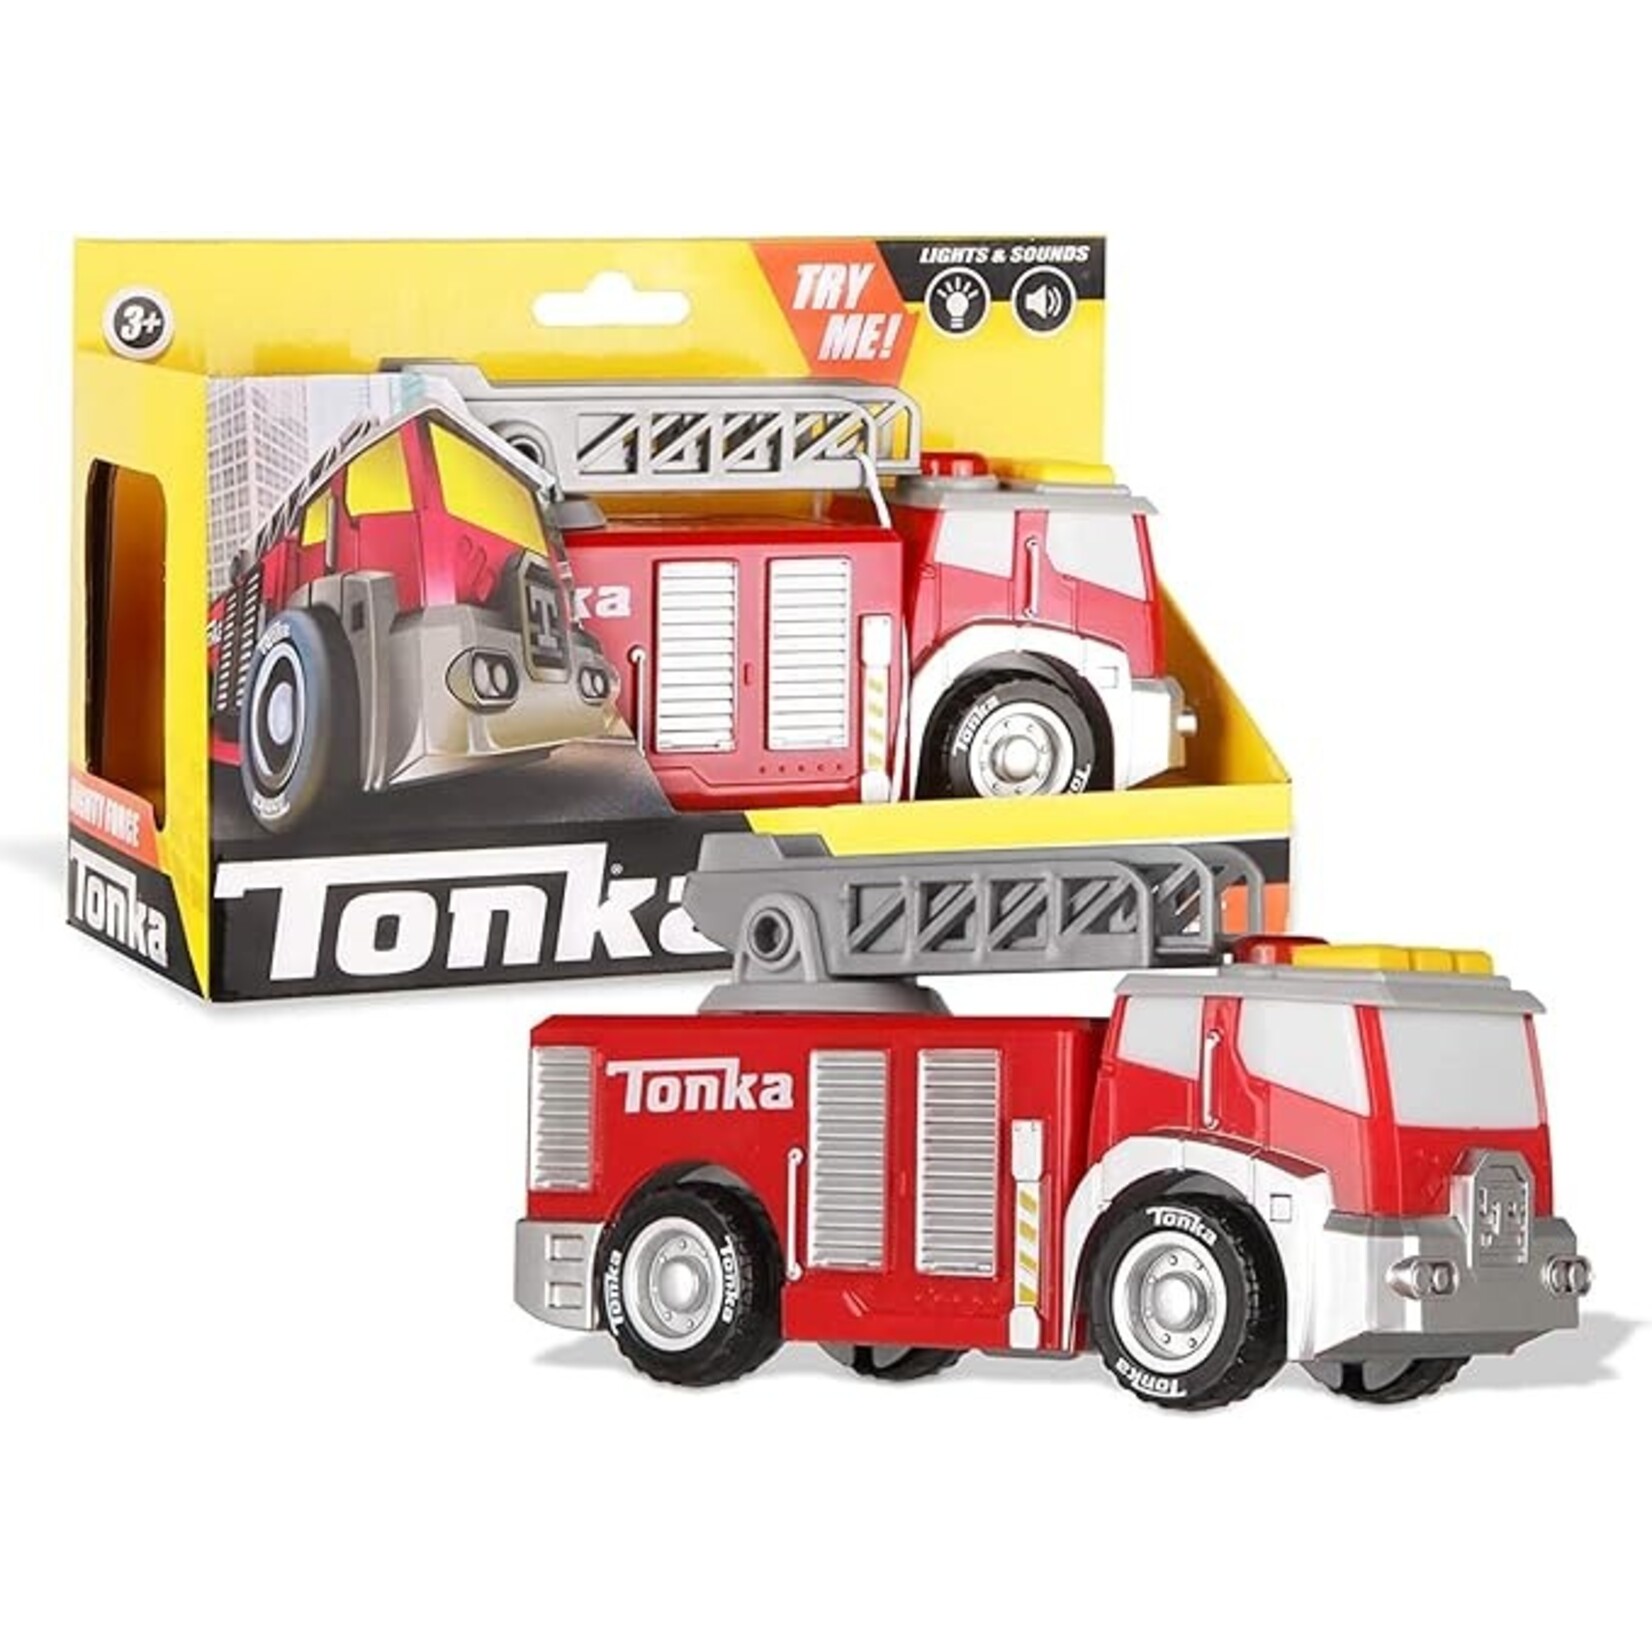 Tonka Tonka - Mighty Fire Truck